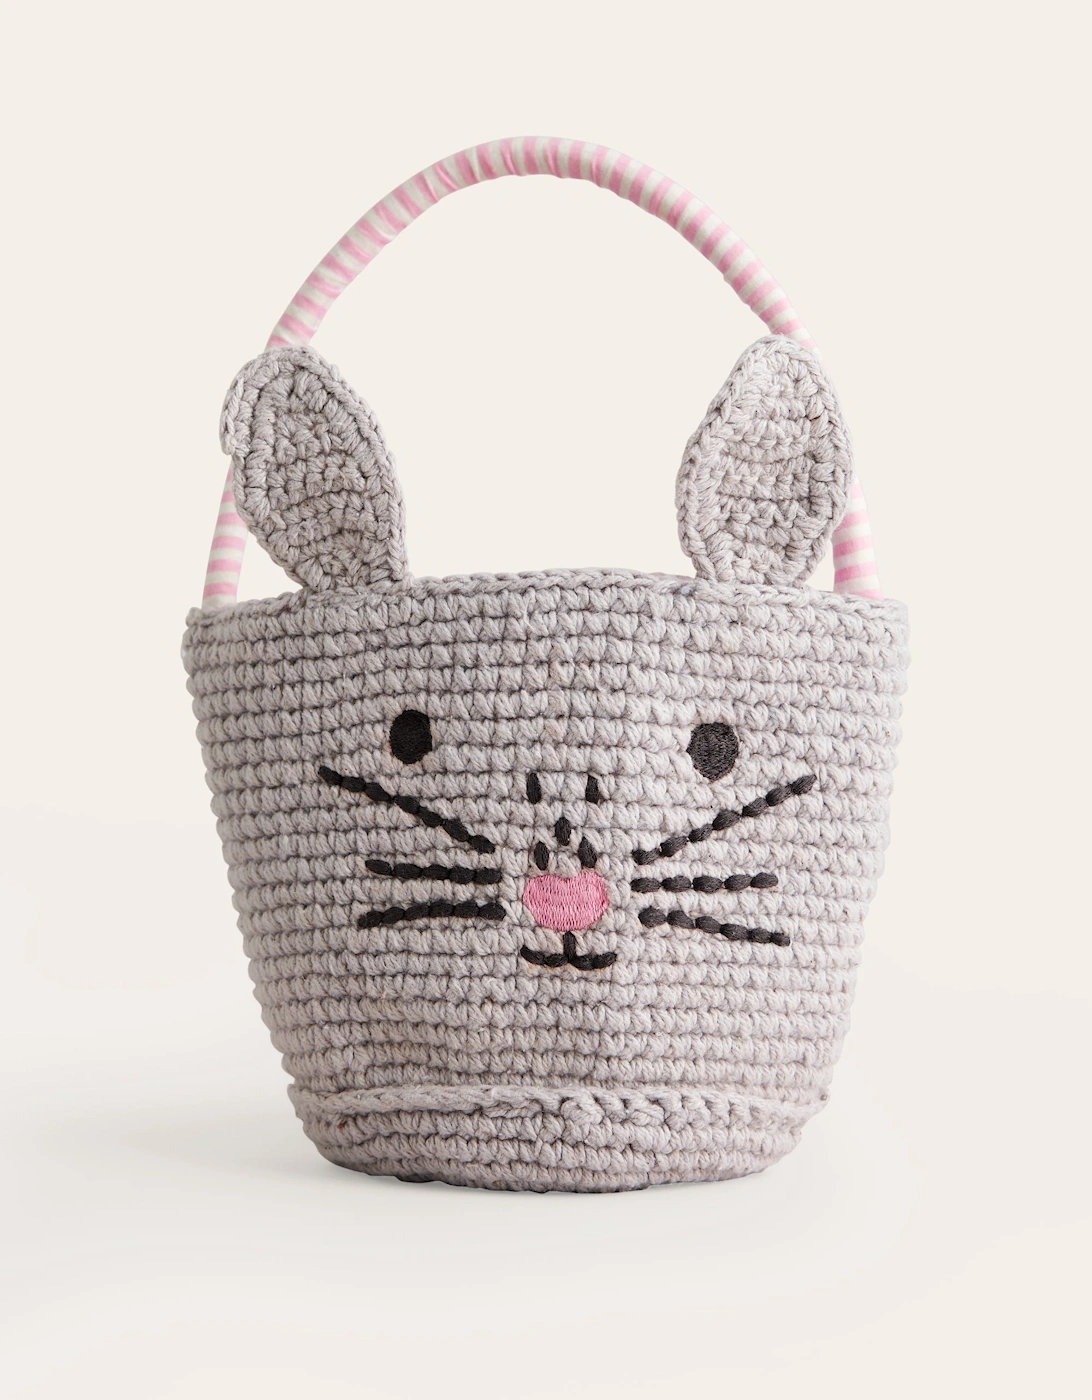 Crochet Bunny Basket, 3 of 2